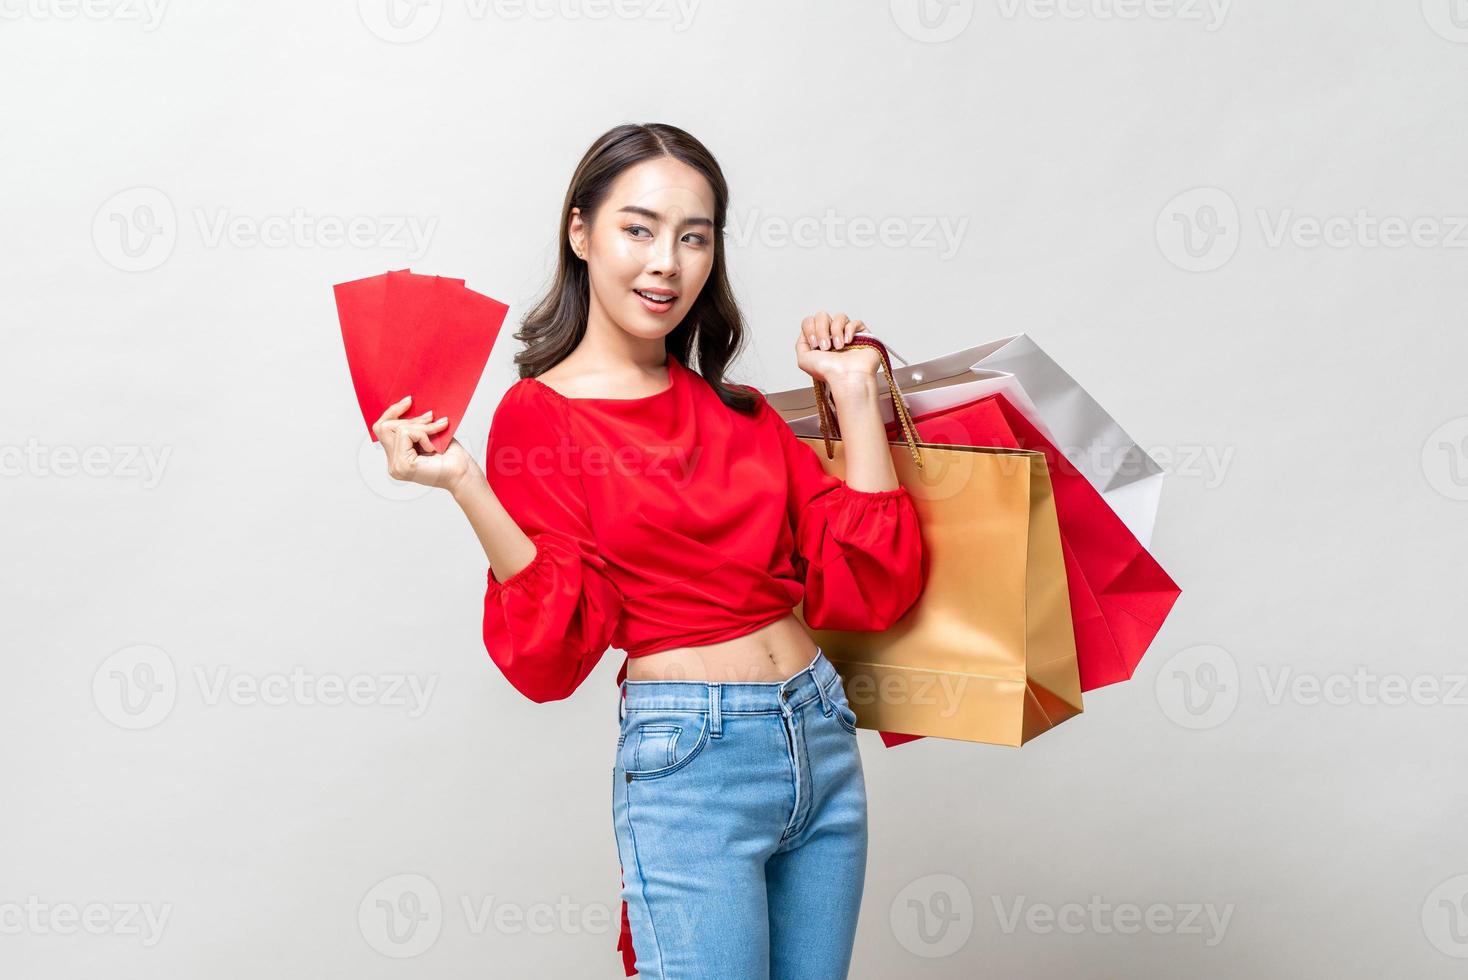 sonriente mujer asiática feliz sosteniendo bolsas de compras y sobres rojos aislados en un fondo de estudio gris claro para el concepto de venta de año nuevo chino foto